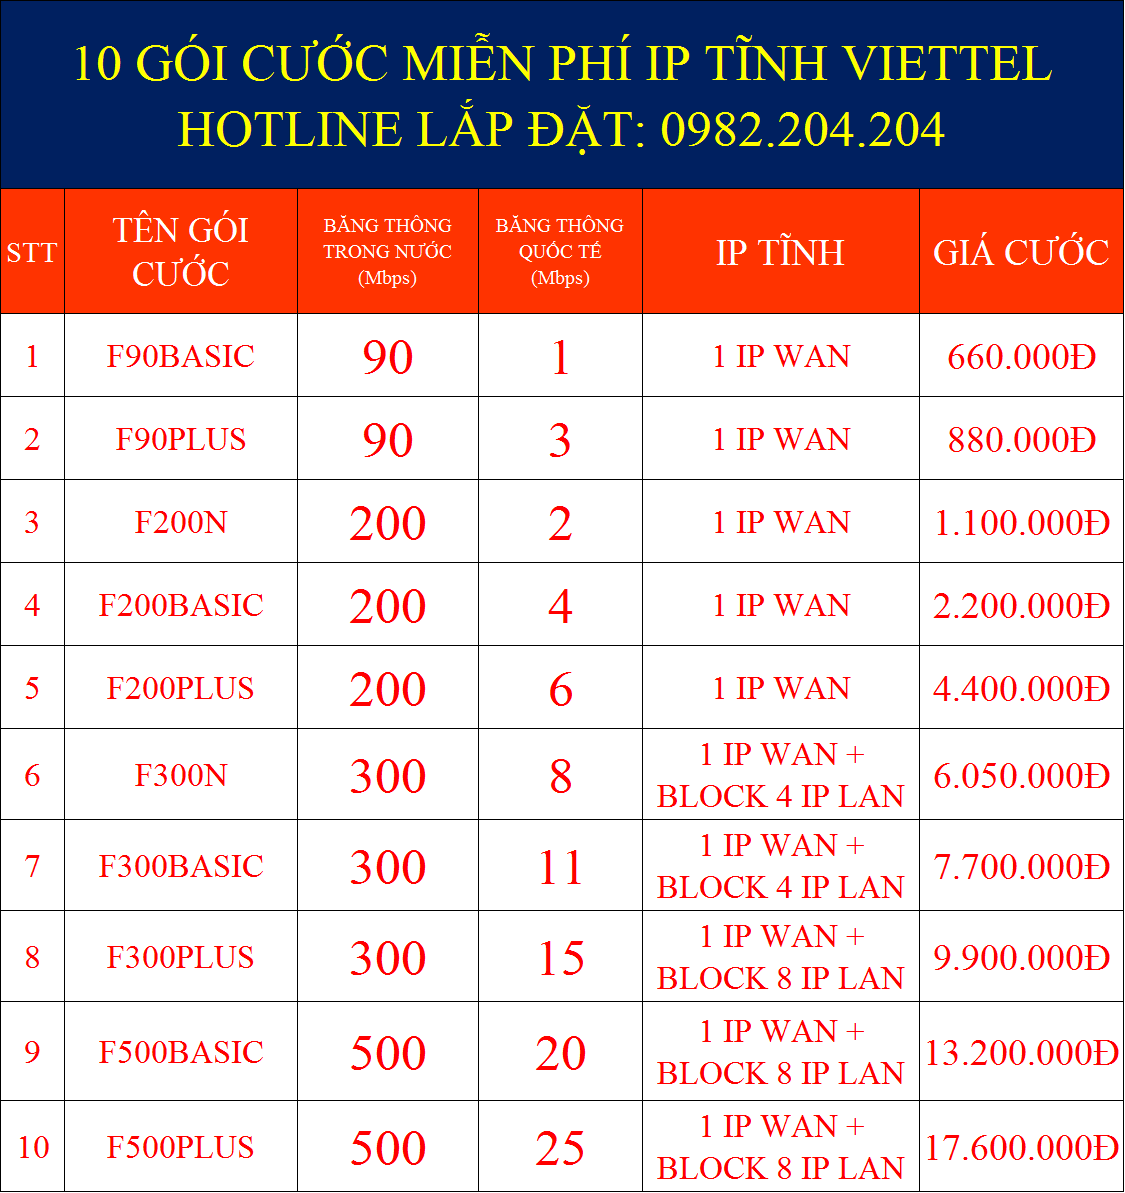 Giá các gói cước IP tĩnh Viettel